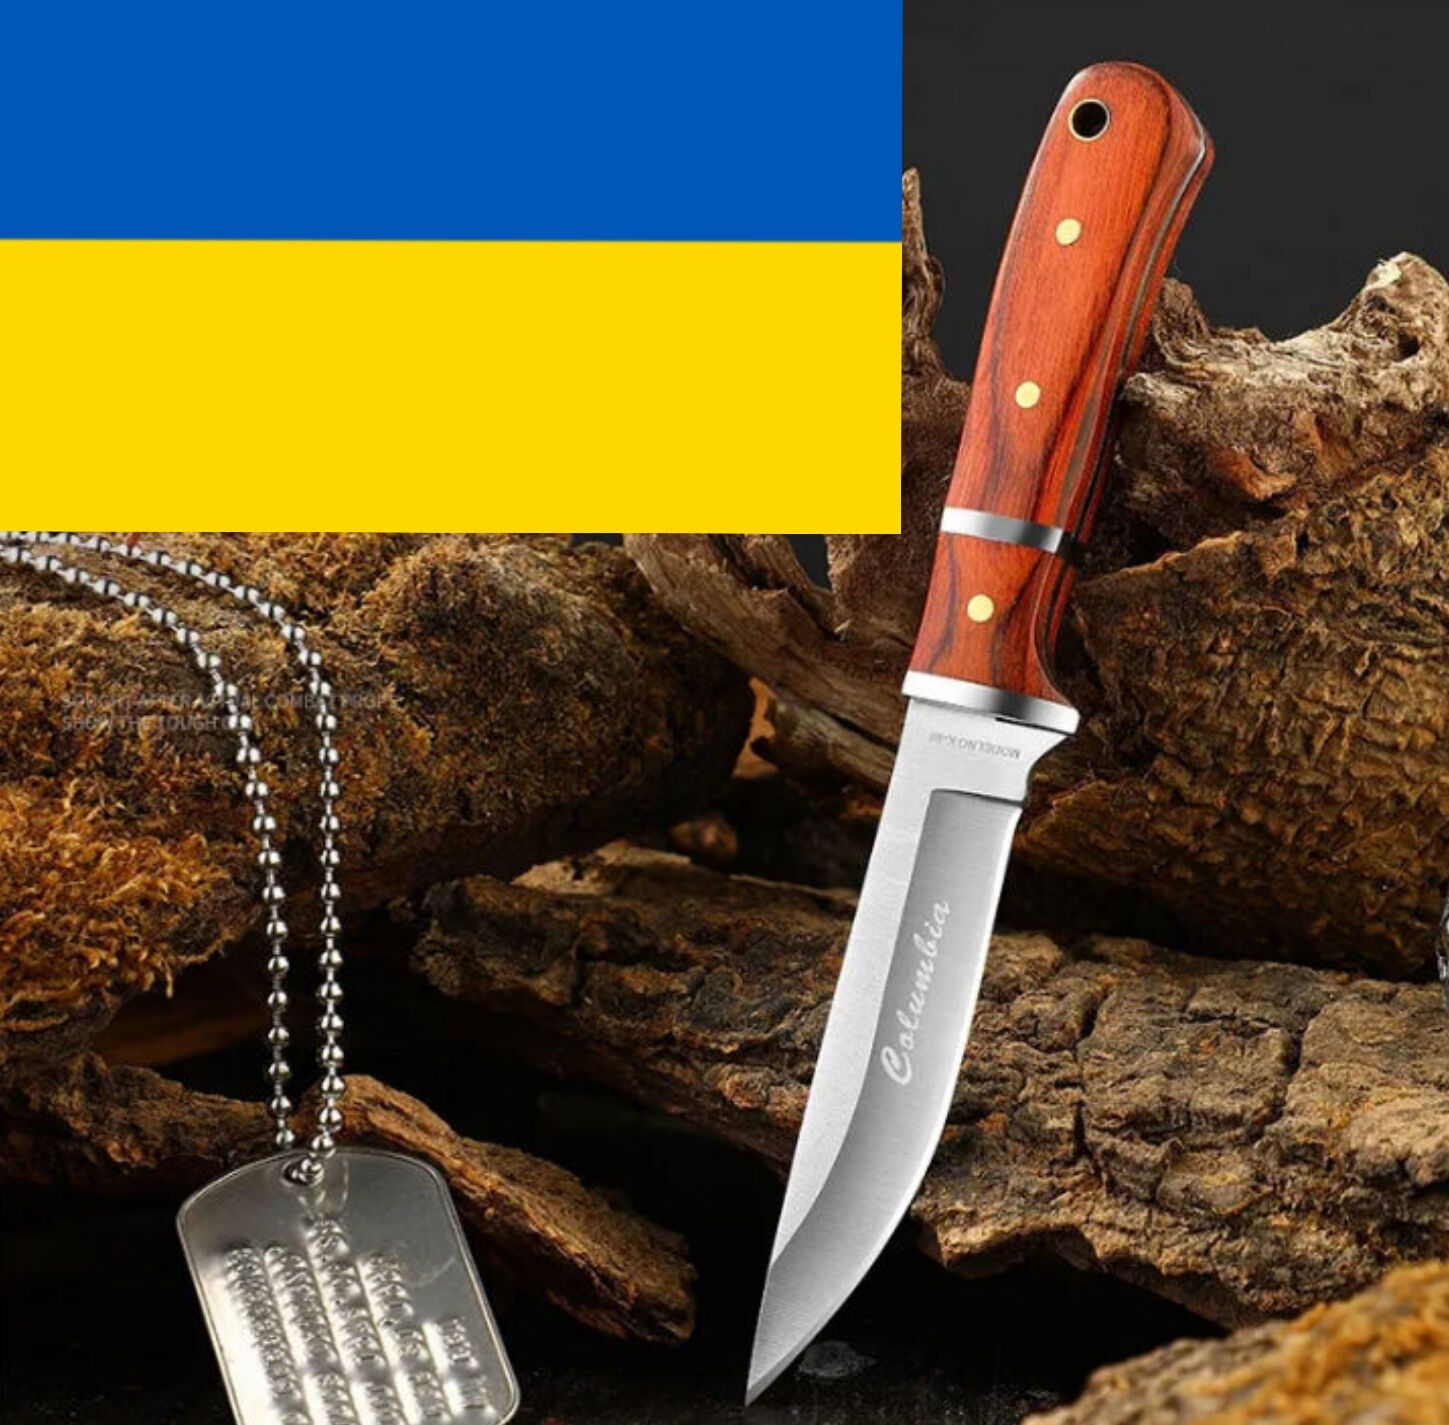 Походный ножик для охотника, рыбака или грибника..